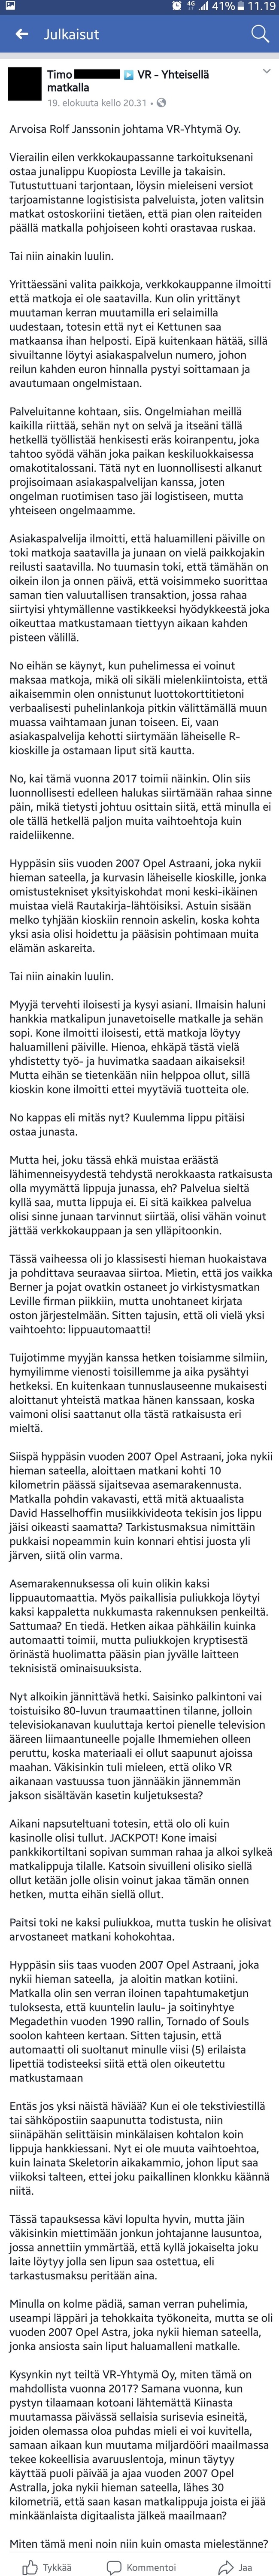 Valtion Rautatie - Asiakkaan valitus VR:n lippuja ostaessa.